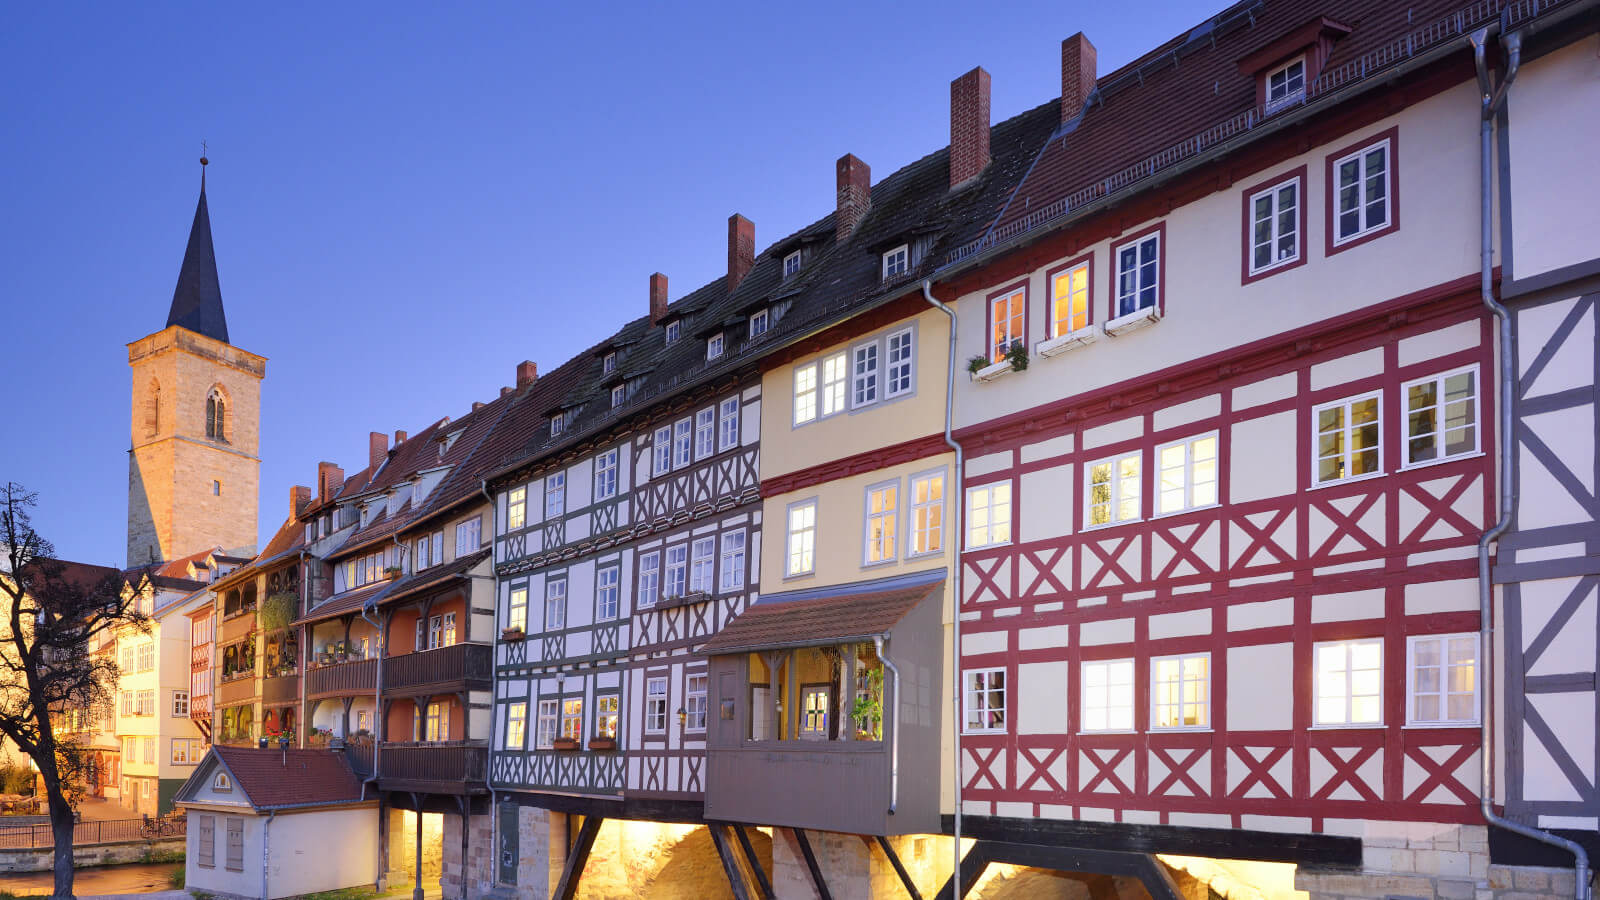 Historia, belleza, arquitectura, Erfurt, turismo